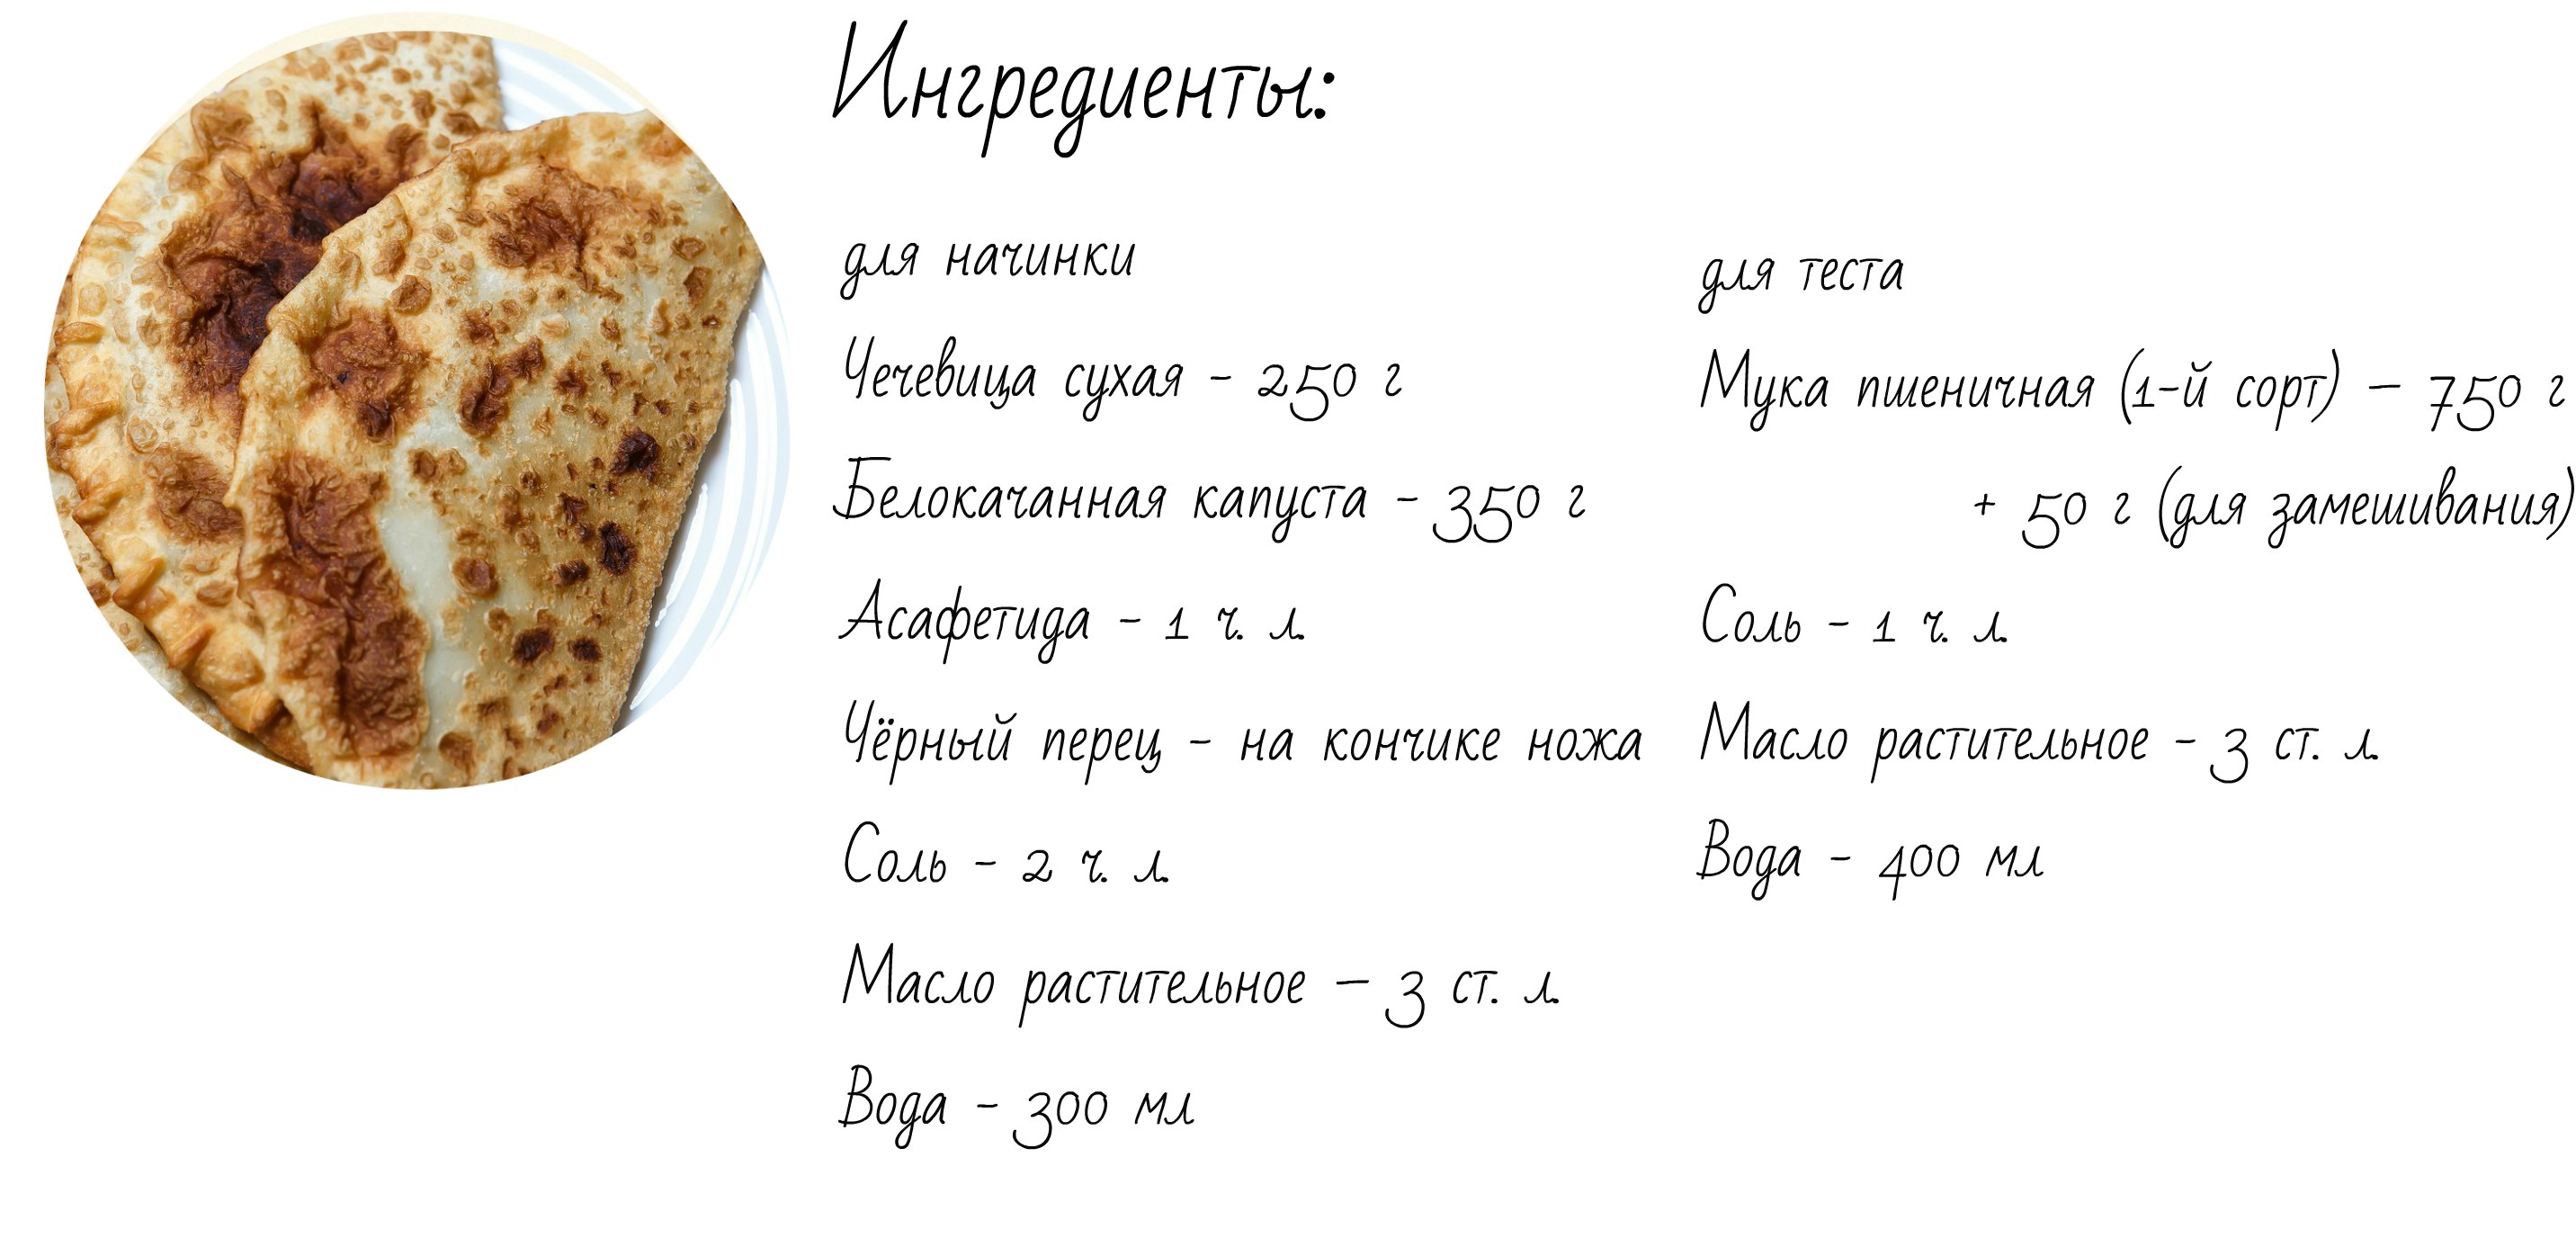 3 рецепта постных блюд от калининградцев Фото №2